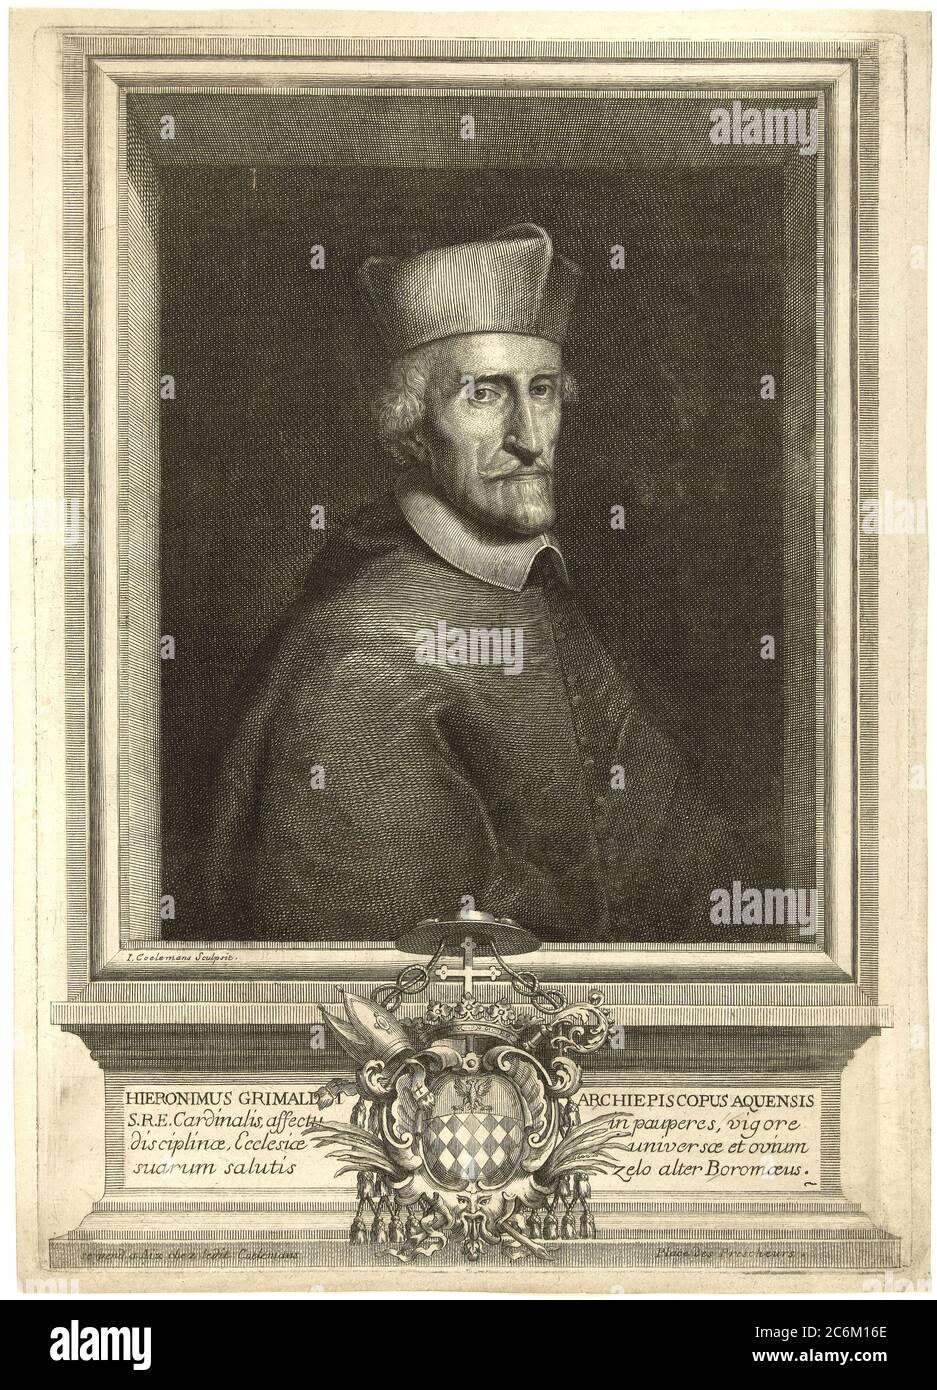 1680 C, ROMA, ITALIA : l'Arcivescovile Cardinale GIROLAMO GRIMALDI CAVALLERONI (1597 - 1685 ), Cardinale nominato da Papa Urbano VIII nel 1643 . Ritratto inciso diI. Coelemans . - Grimaldi-Cavalleroni - RELIGIONE CATTOLICA - Arcivescovo - CARDINALE - RELIGIONE CATTOLICA - CLERICALI - CLERICALE - ALTO PRElati - VATICANO - VATICANO - ITALIA - incisione - incisione - illustrazione - STORIA - FOTO STORICHE --- Archivio GBB Foto Stock